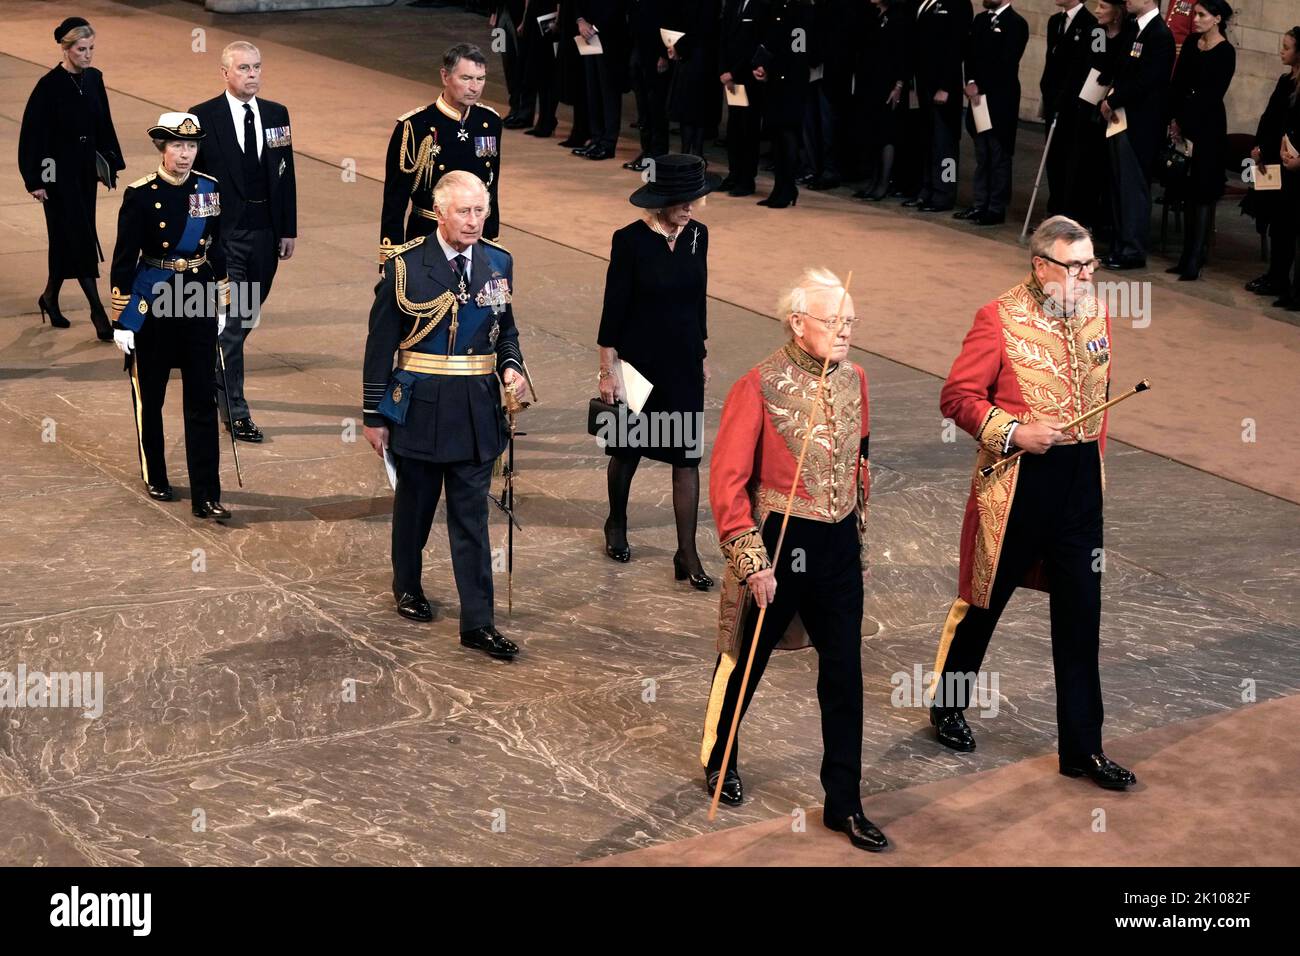 König Karl III. Und Camilla, die Königin Consort, die Prinzessin Royal, Vizeadmiral Sir Tim Laurence und der Herzog von York während eines Dienstes in der Westminster Hall, London, wo der Sarg von Königin Elizabeth II. Vor ihrer Beerdigung am Montag in Zustand sein wird. Bilddatum: Mittwoch, 14. September 2022. Stockfoto